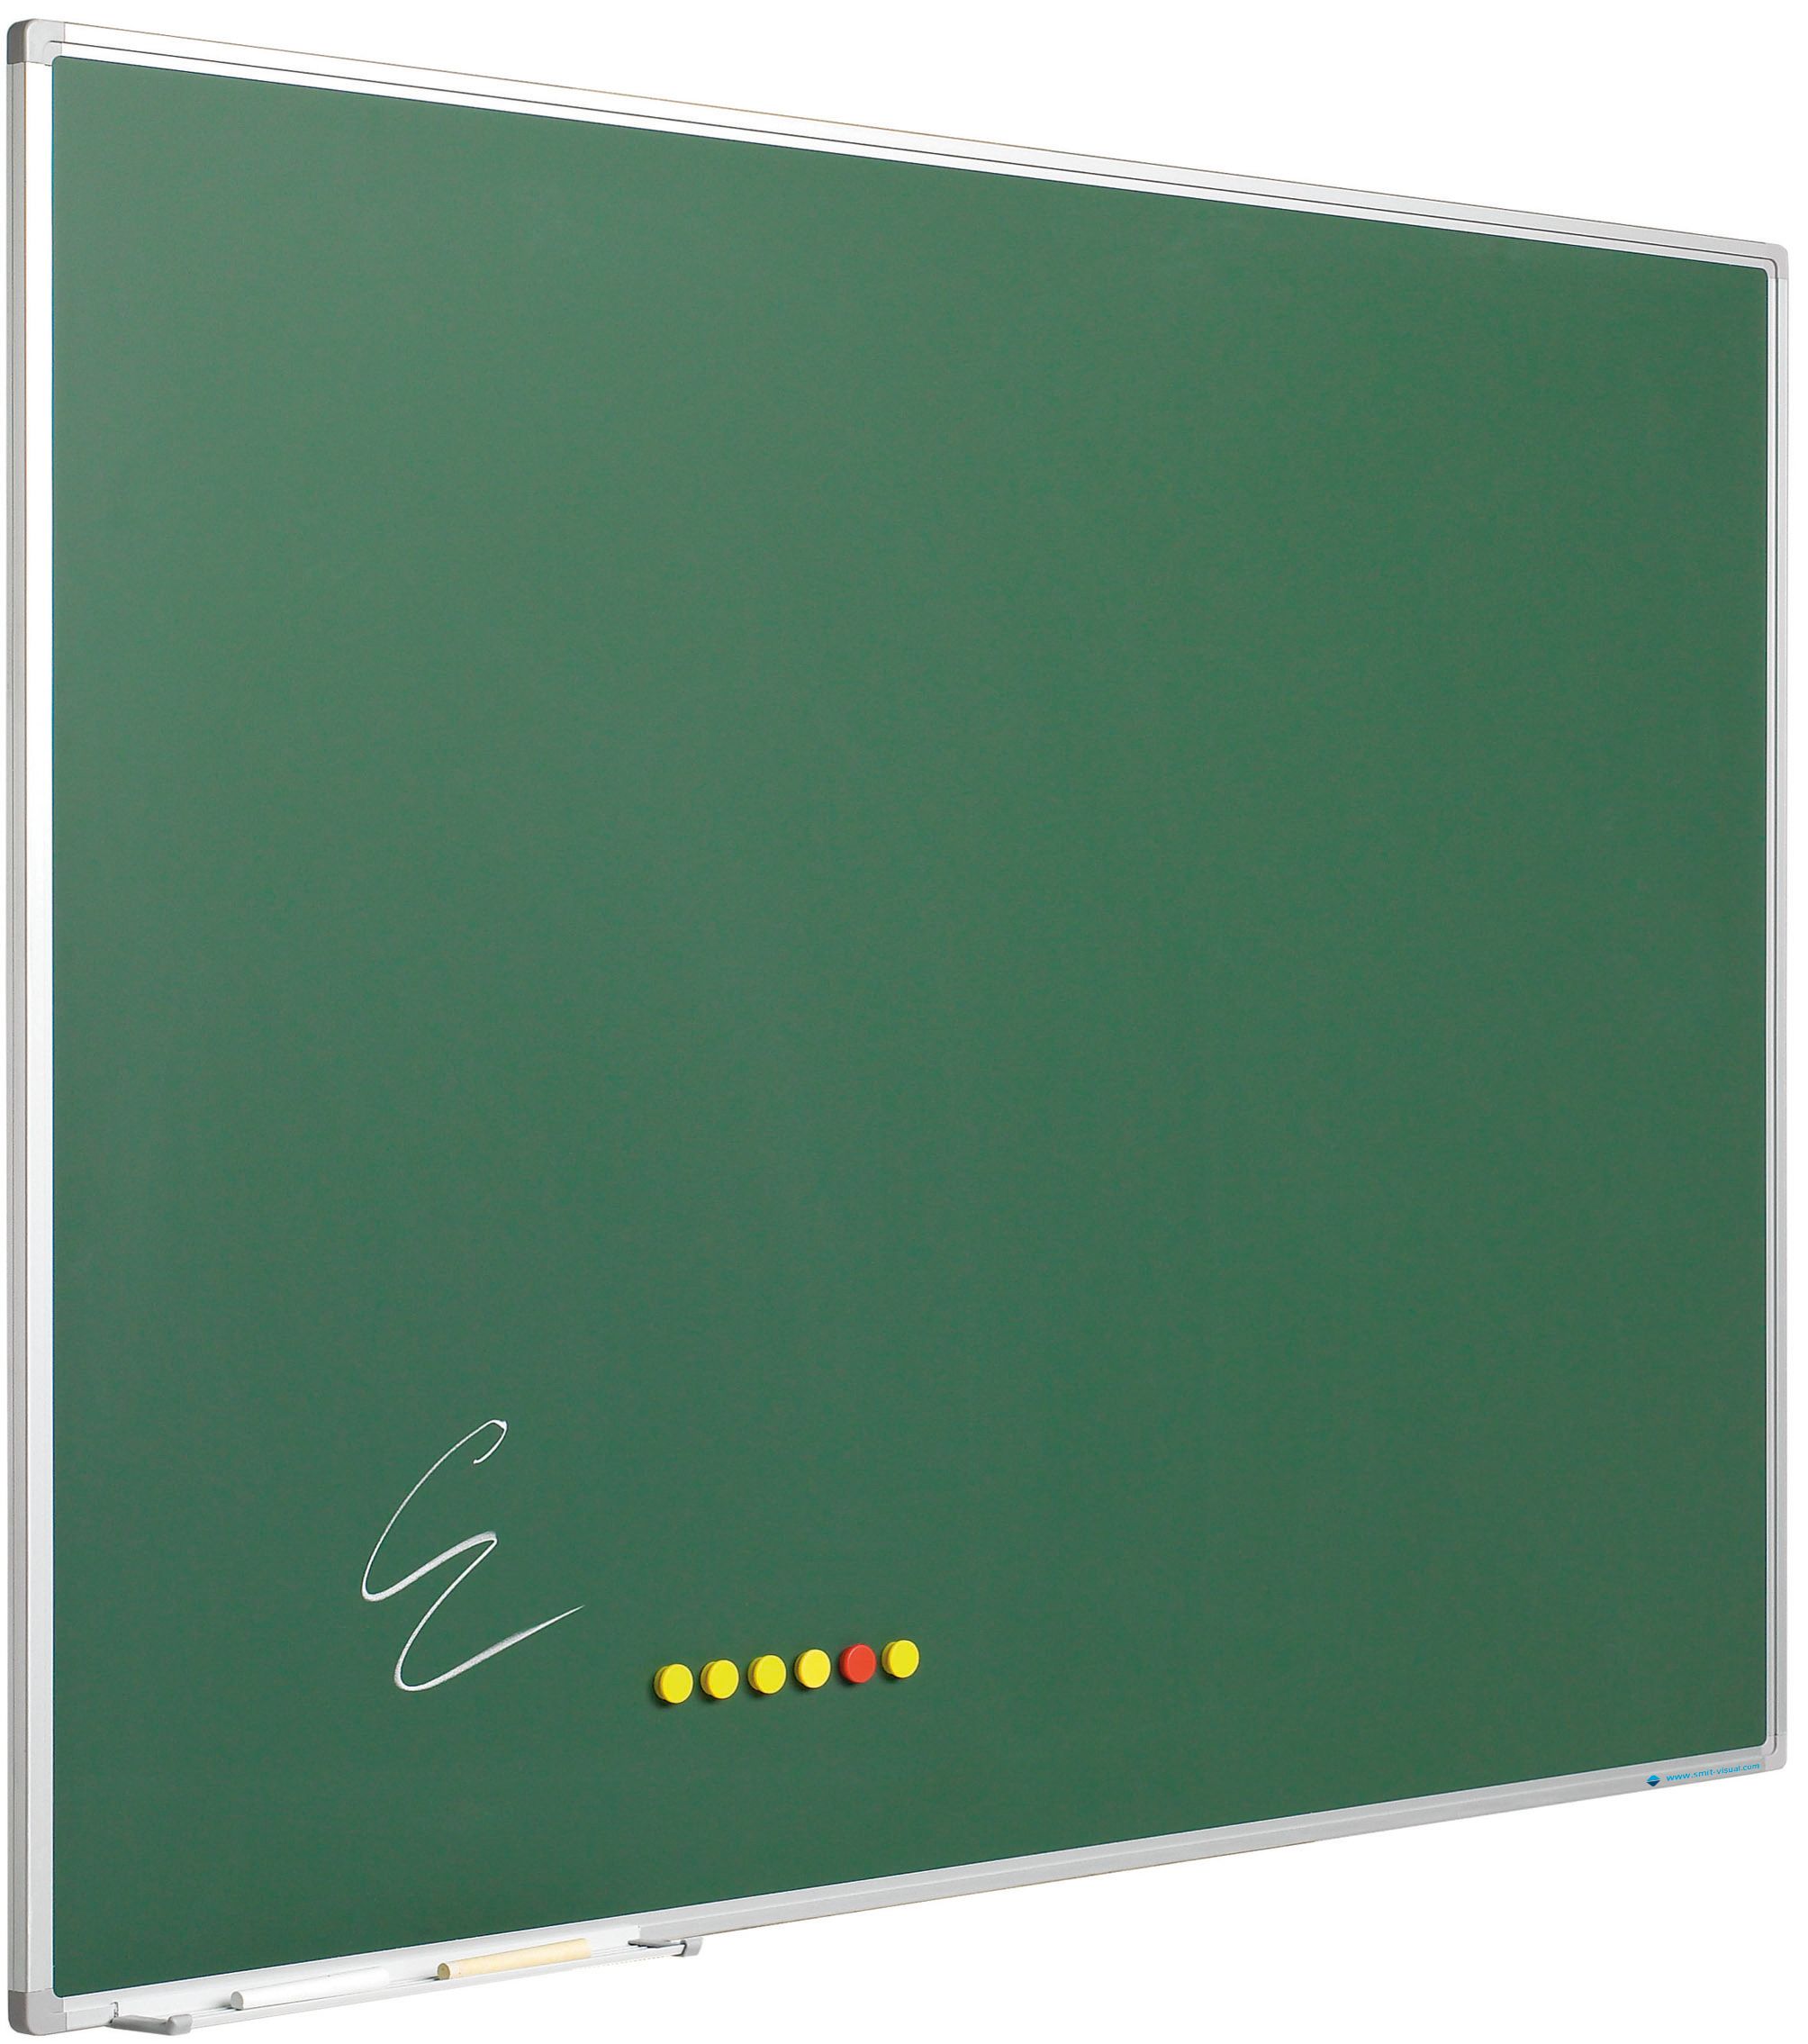 Krijtbord Softline profiel 8mm, emailstaal groen - 90x180 cm